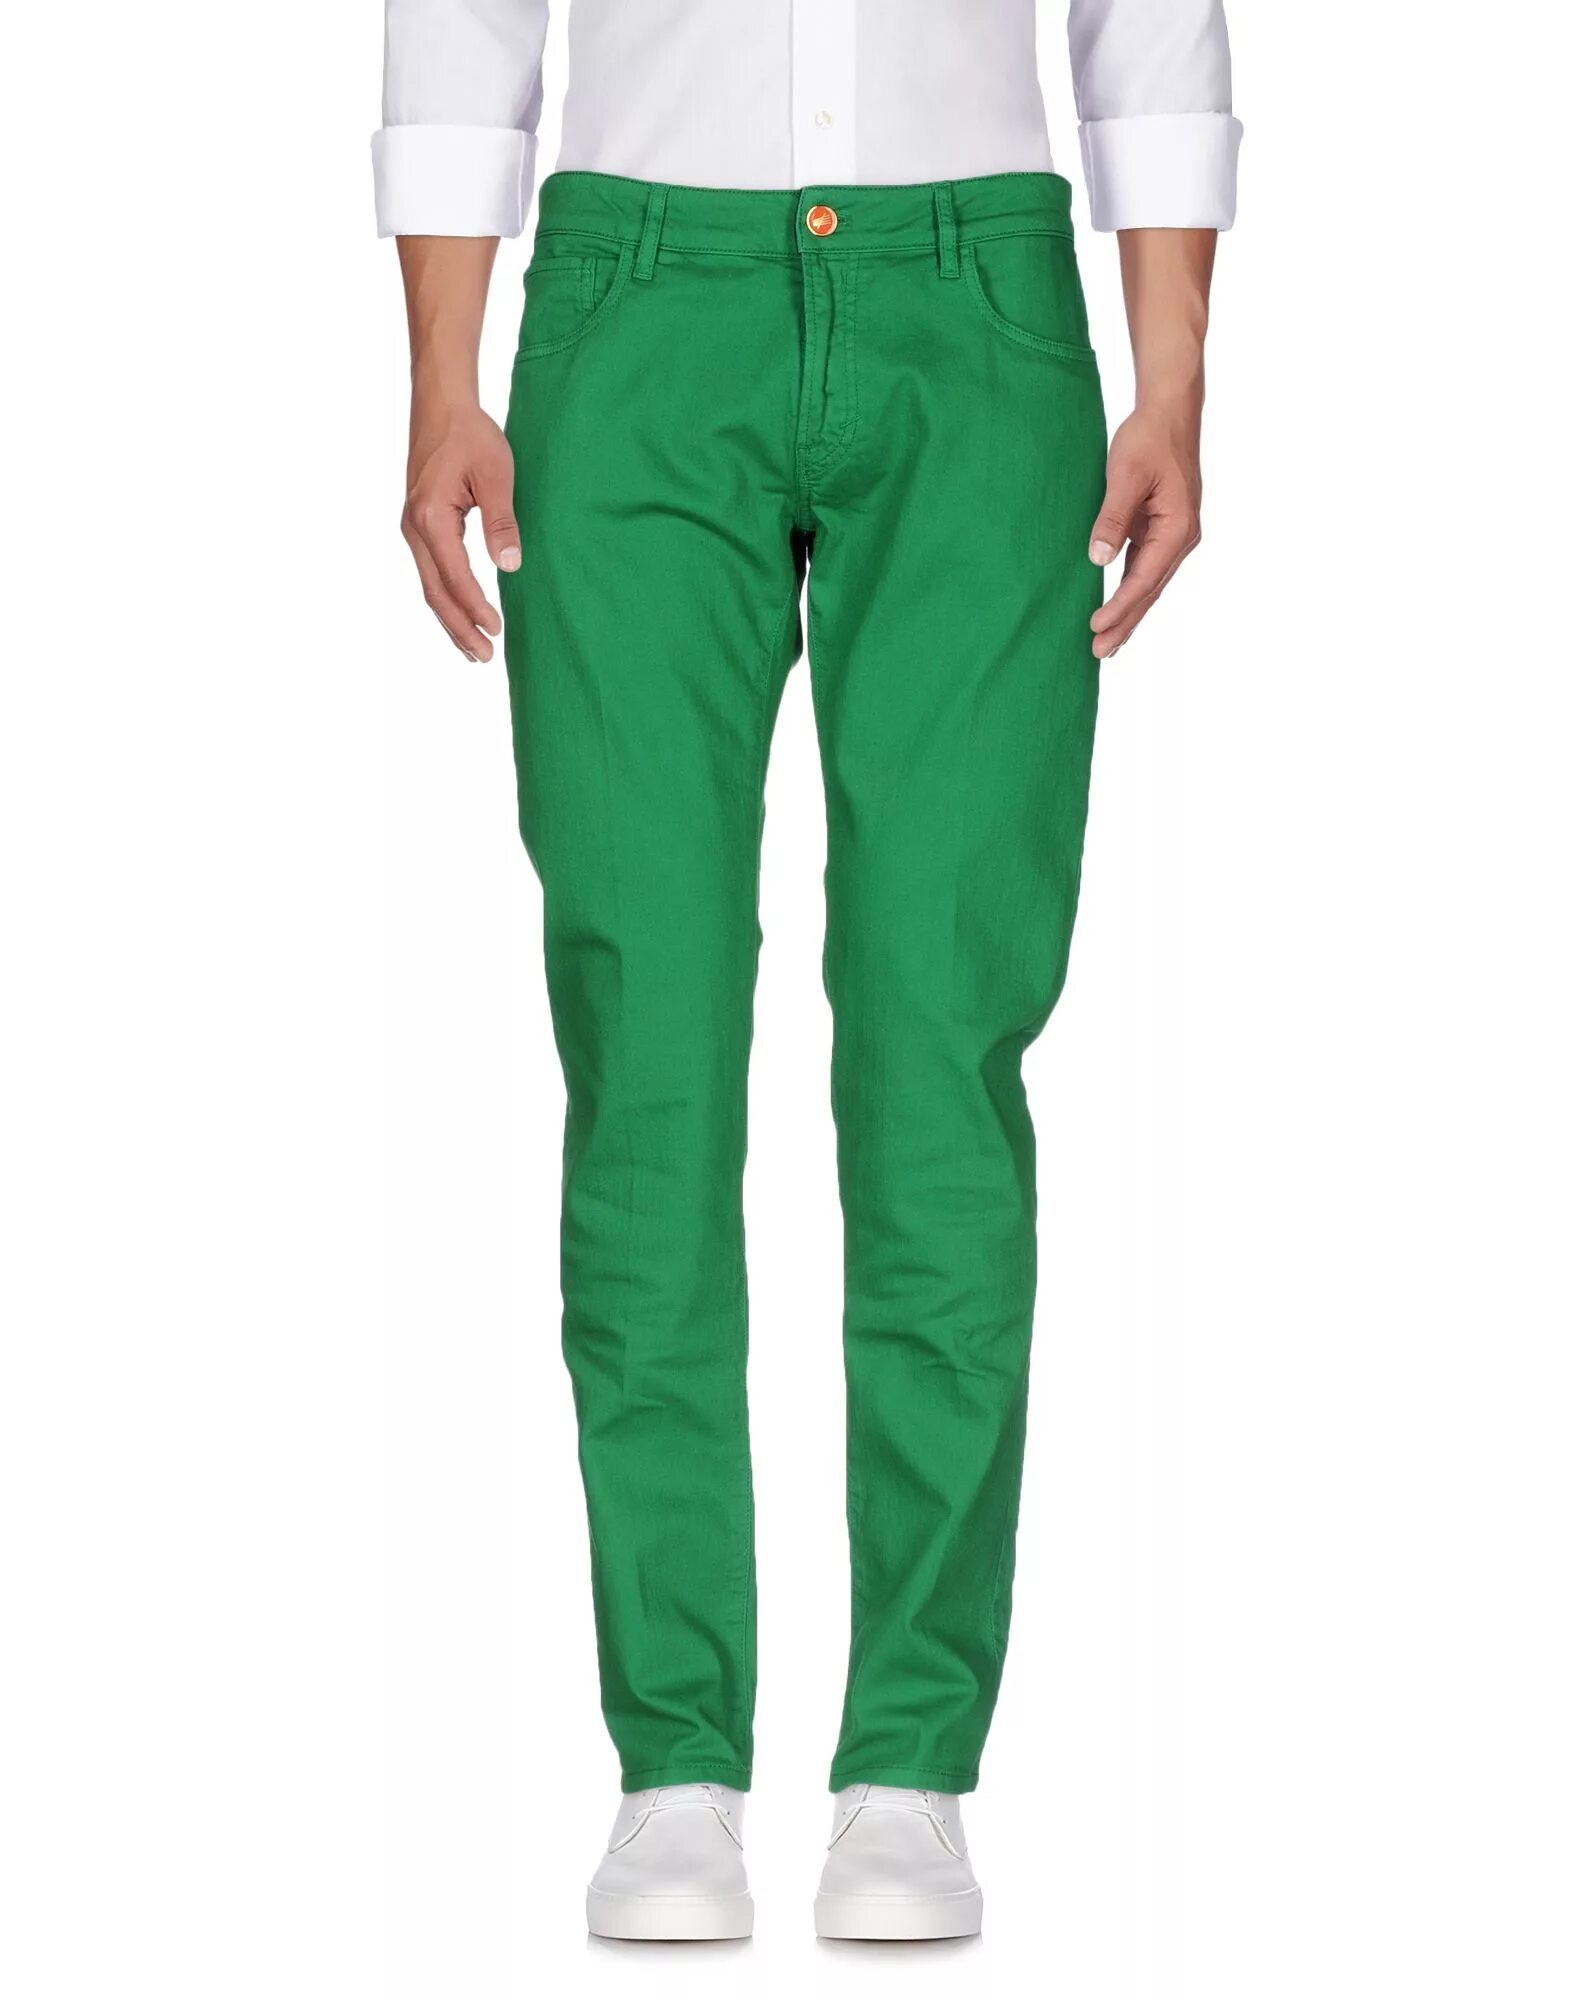 Купить зеленые штаны. Брюки Sublevel мужские зеленый. Зеленые брюки мужские. Зелёные штаны мужские. Зеленые джинсы мужские.